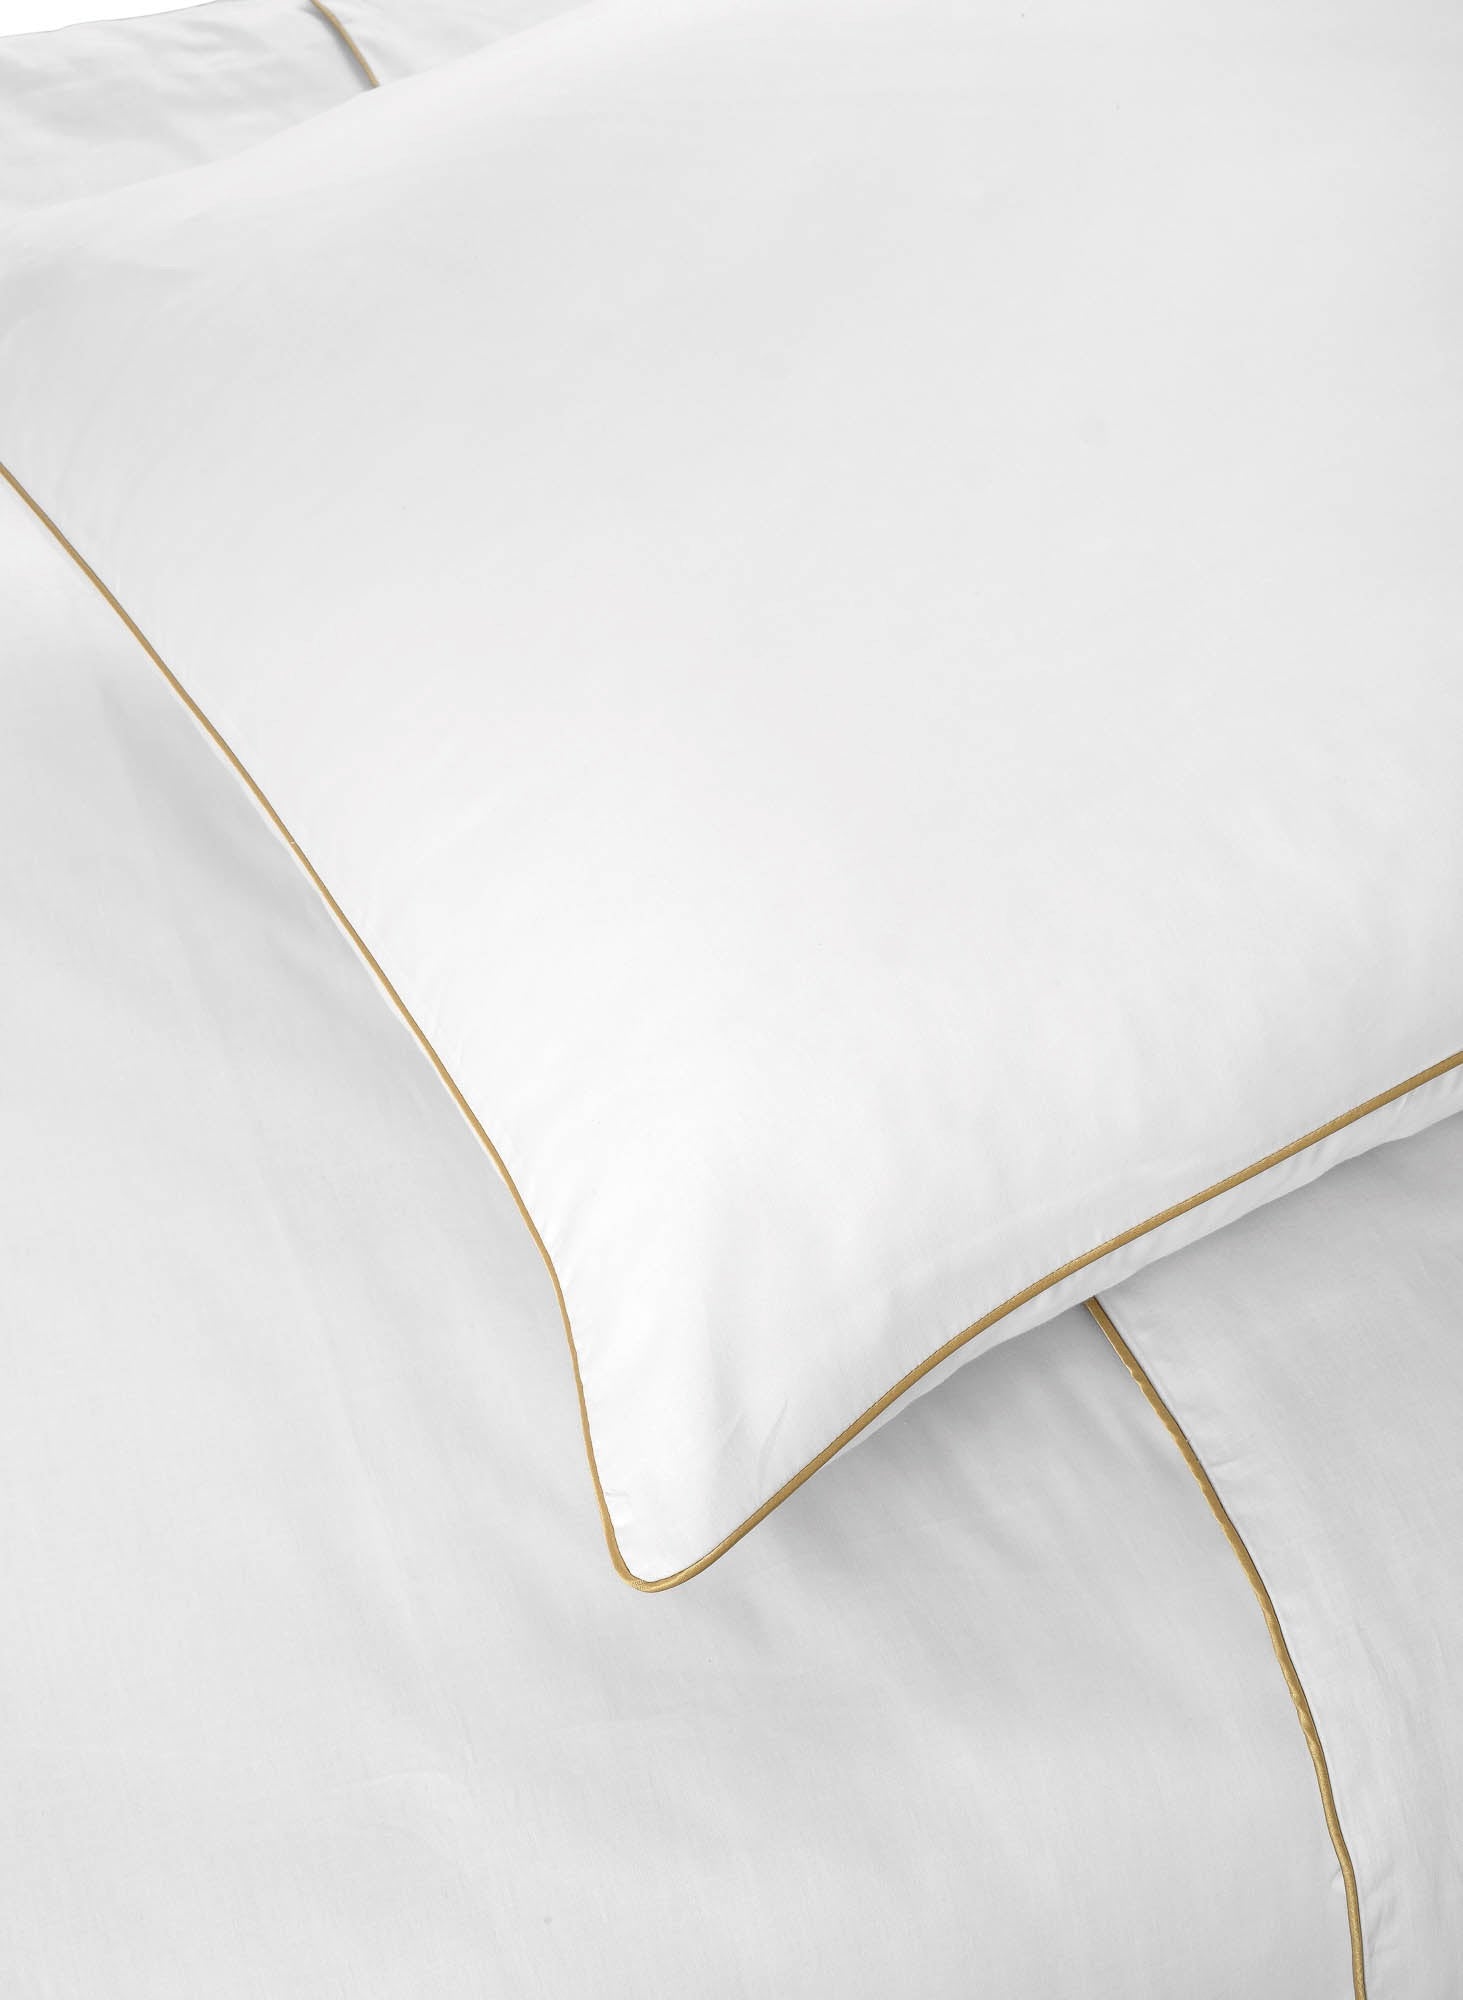 Deluxe Satin Bed Linen Luxor White